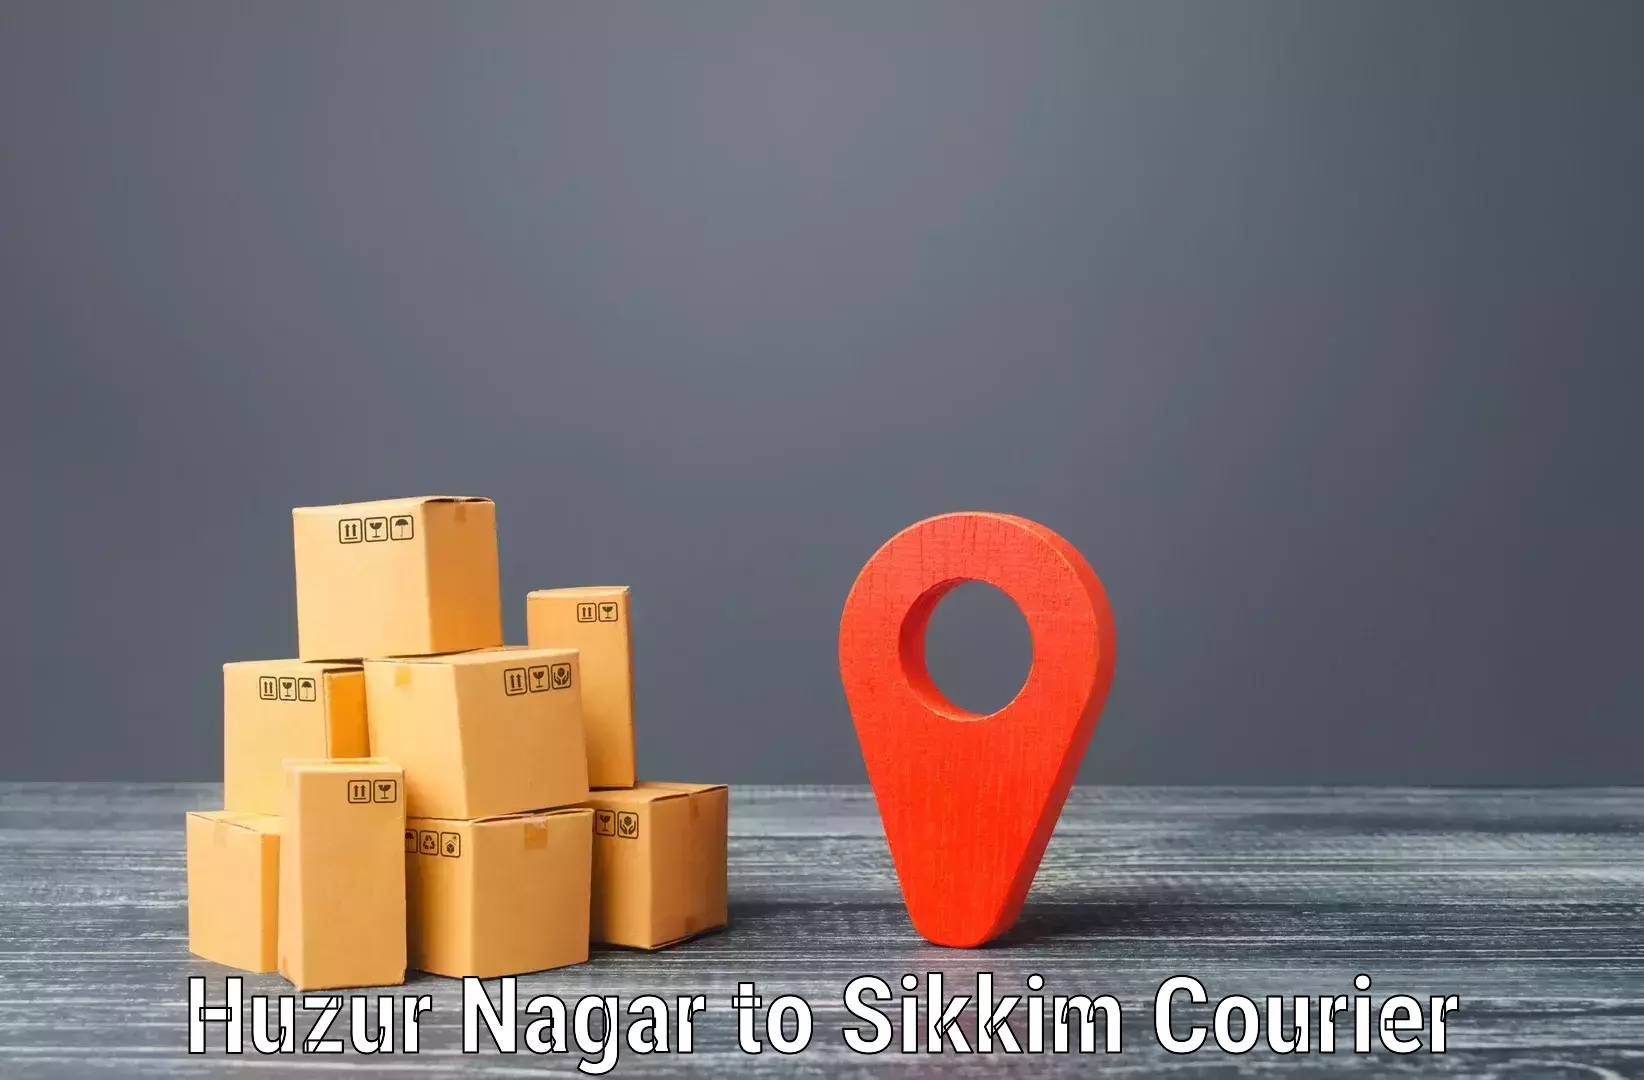 Global parcel delivery Huzur Nagar to West Sikkim